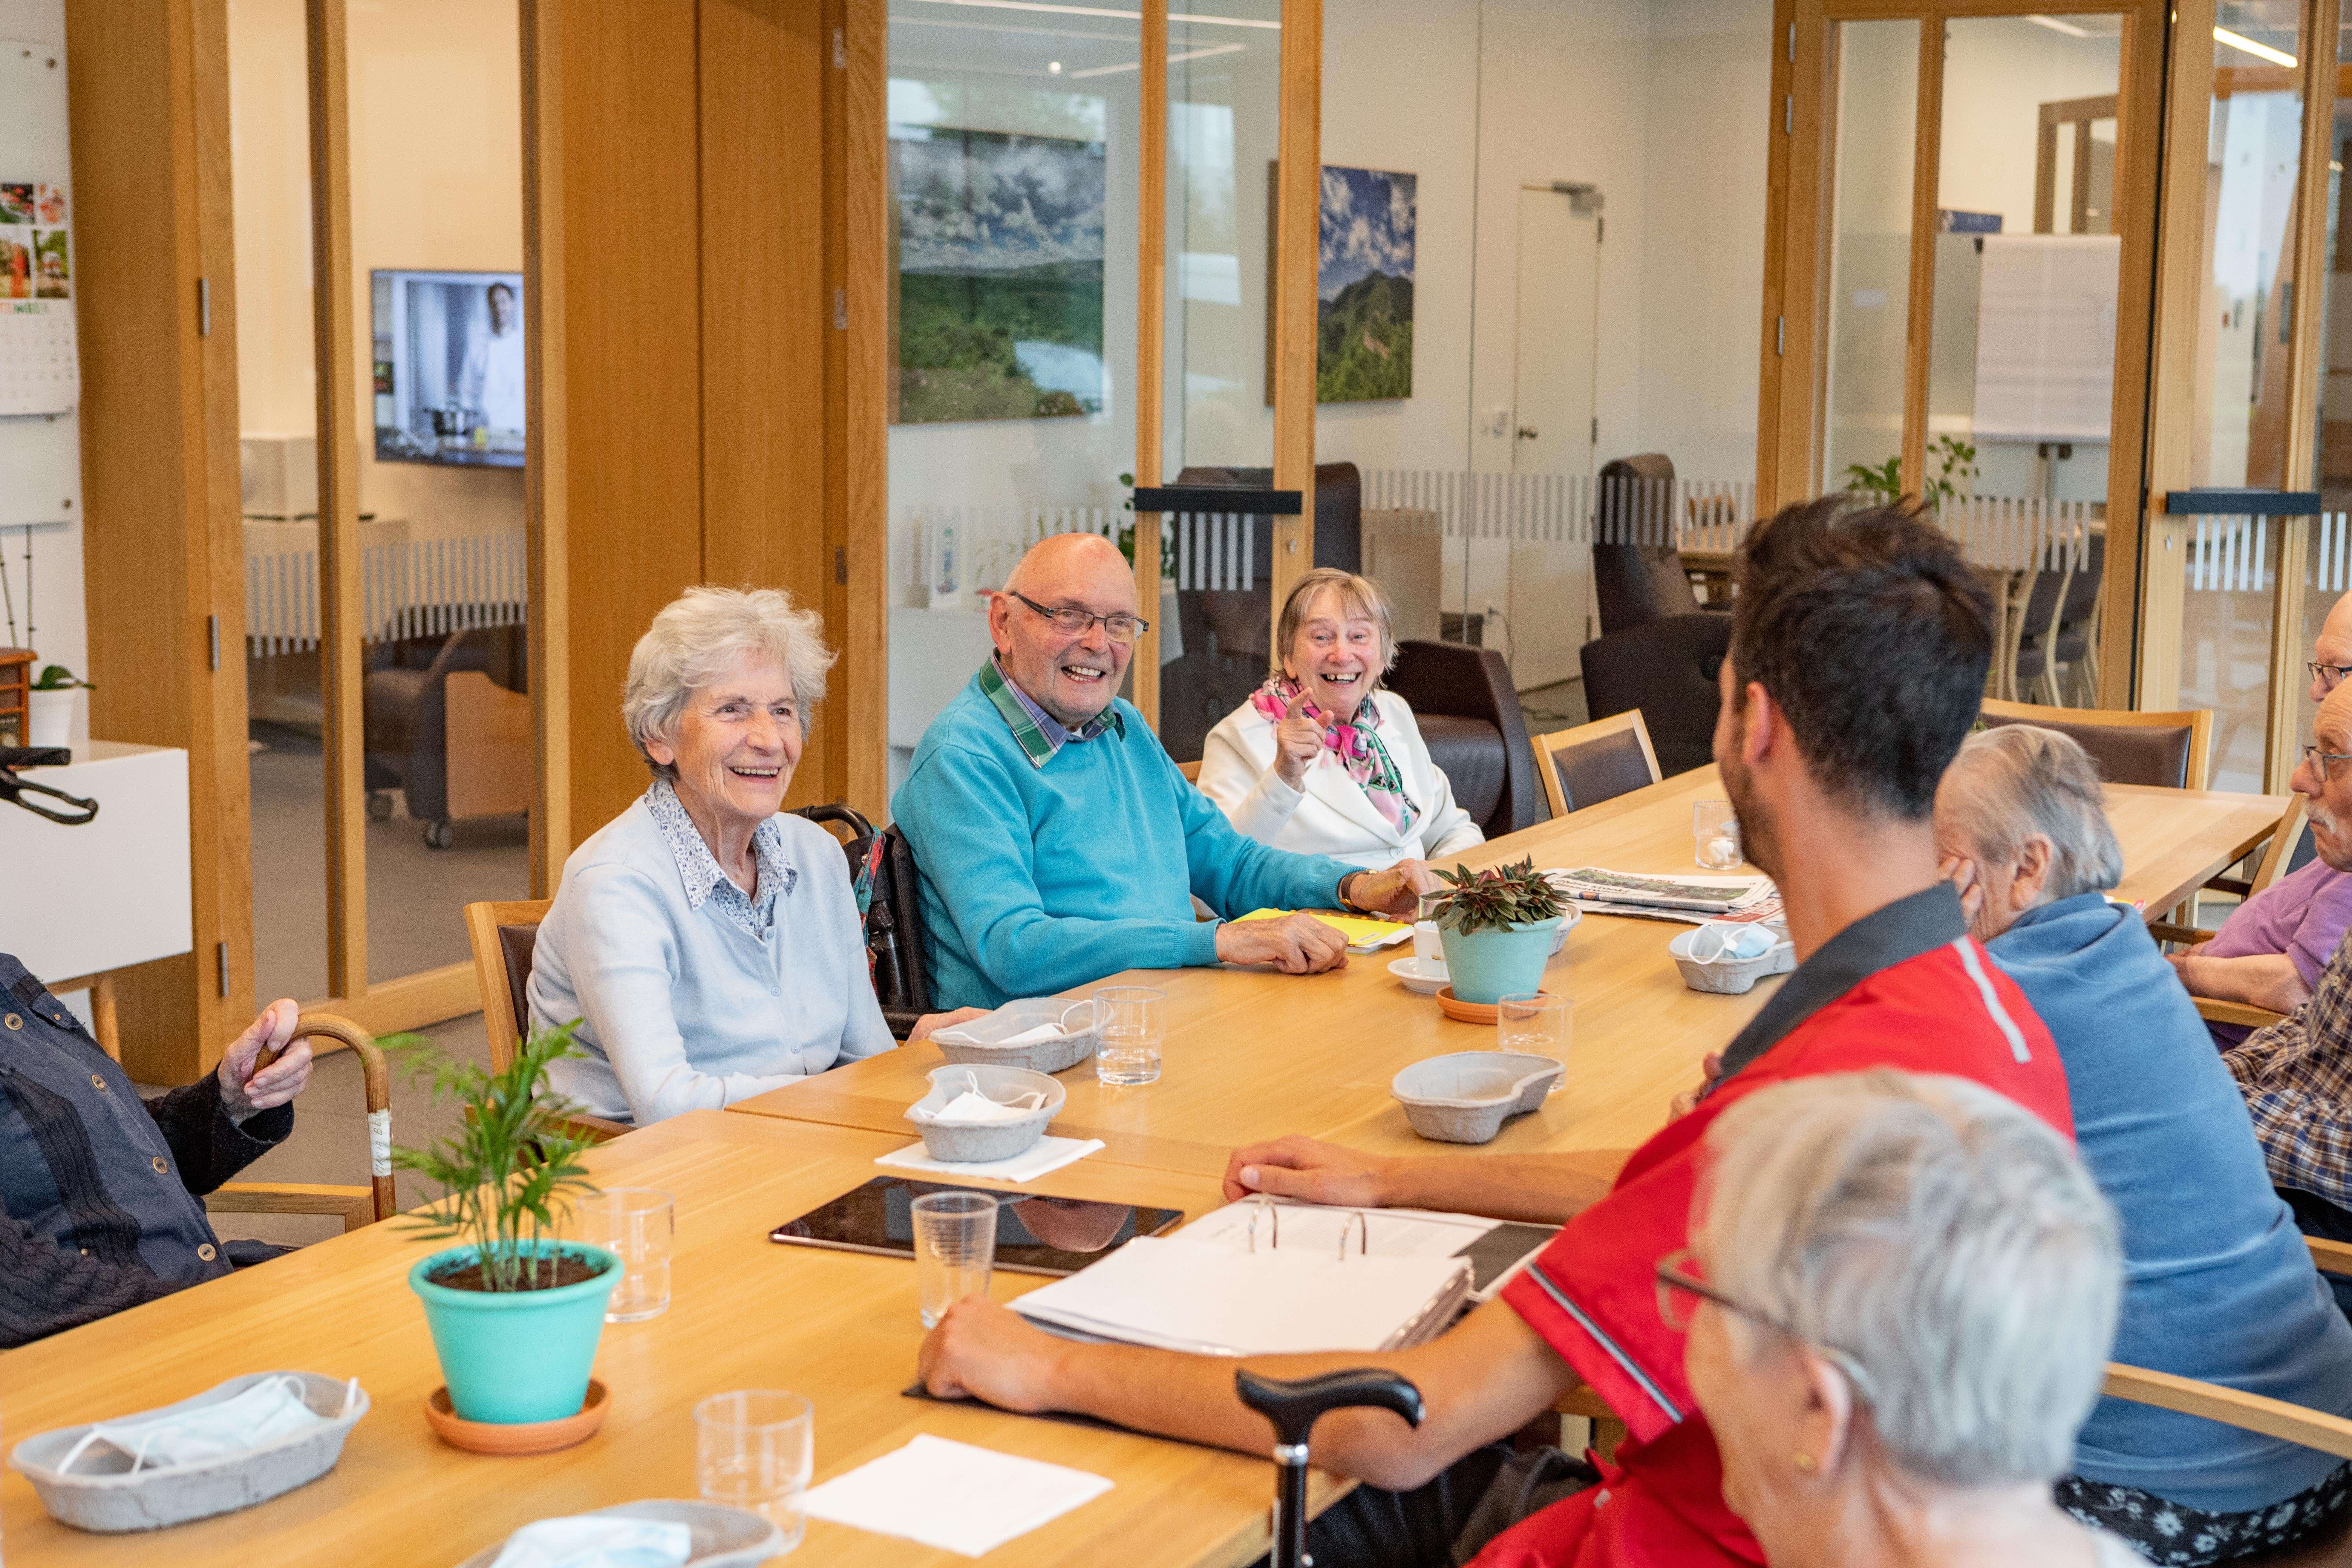 Oudere personen genieten van het sociale contact ana de grote tafel in het Dagverzorgingscentrum De Refuge in Gent